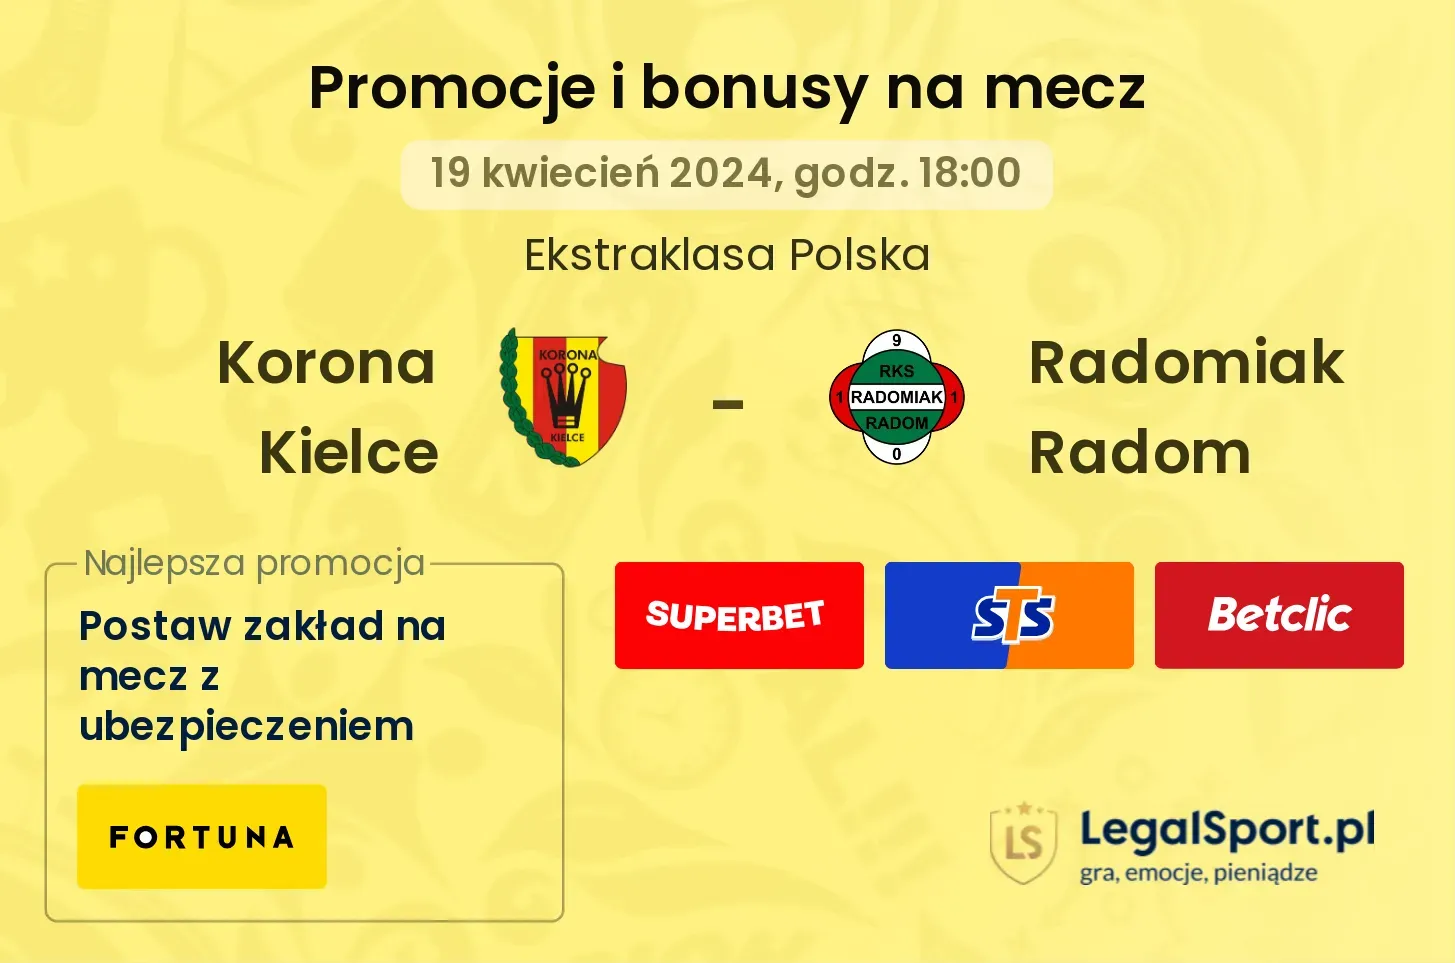 Korona Kielce - Radomiak Radom promocje bonusy na mecz